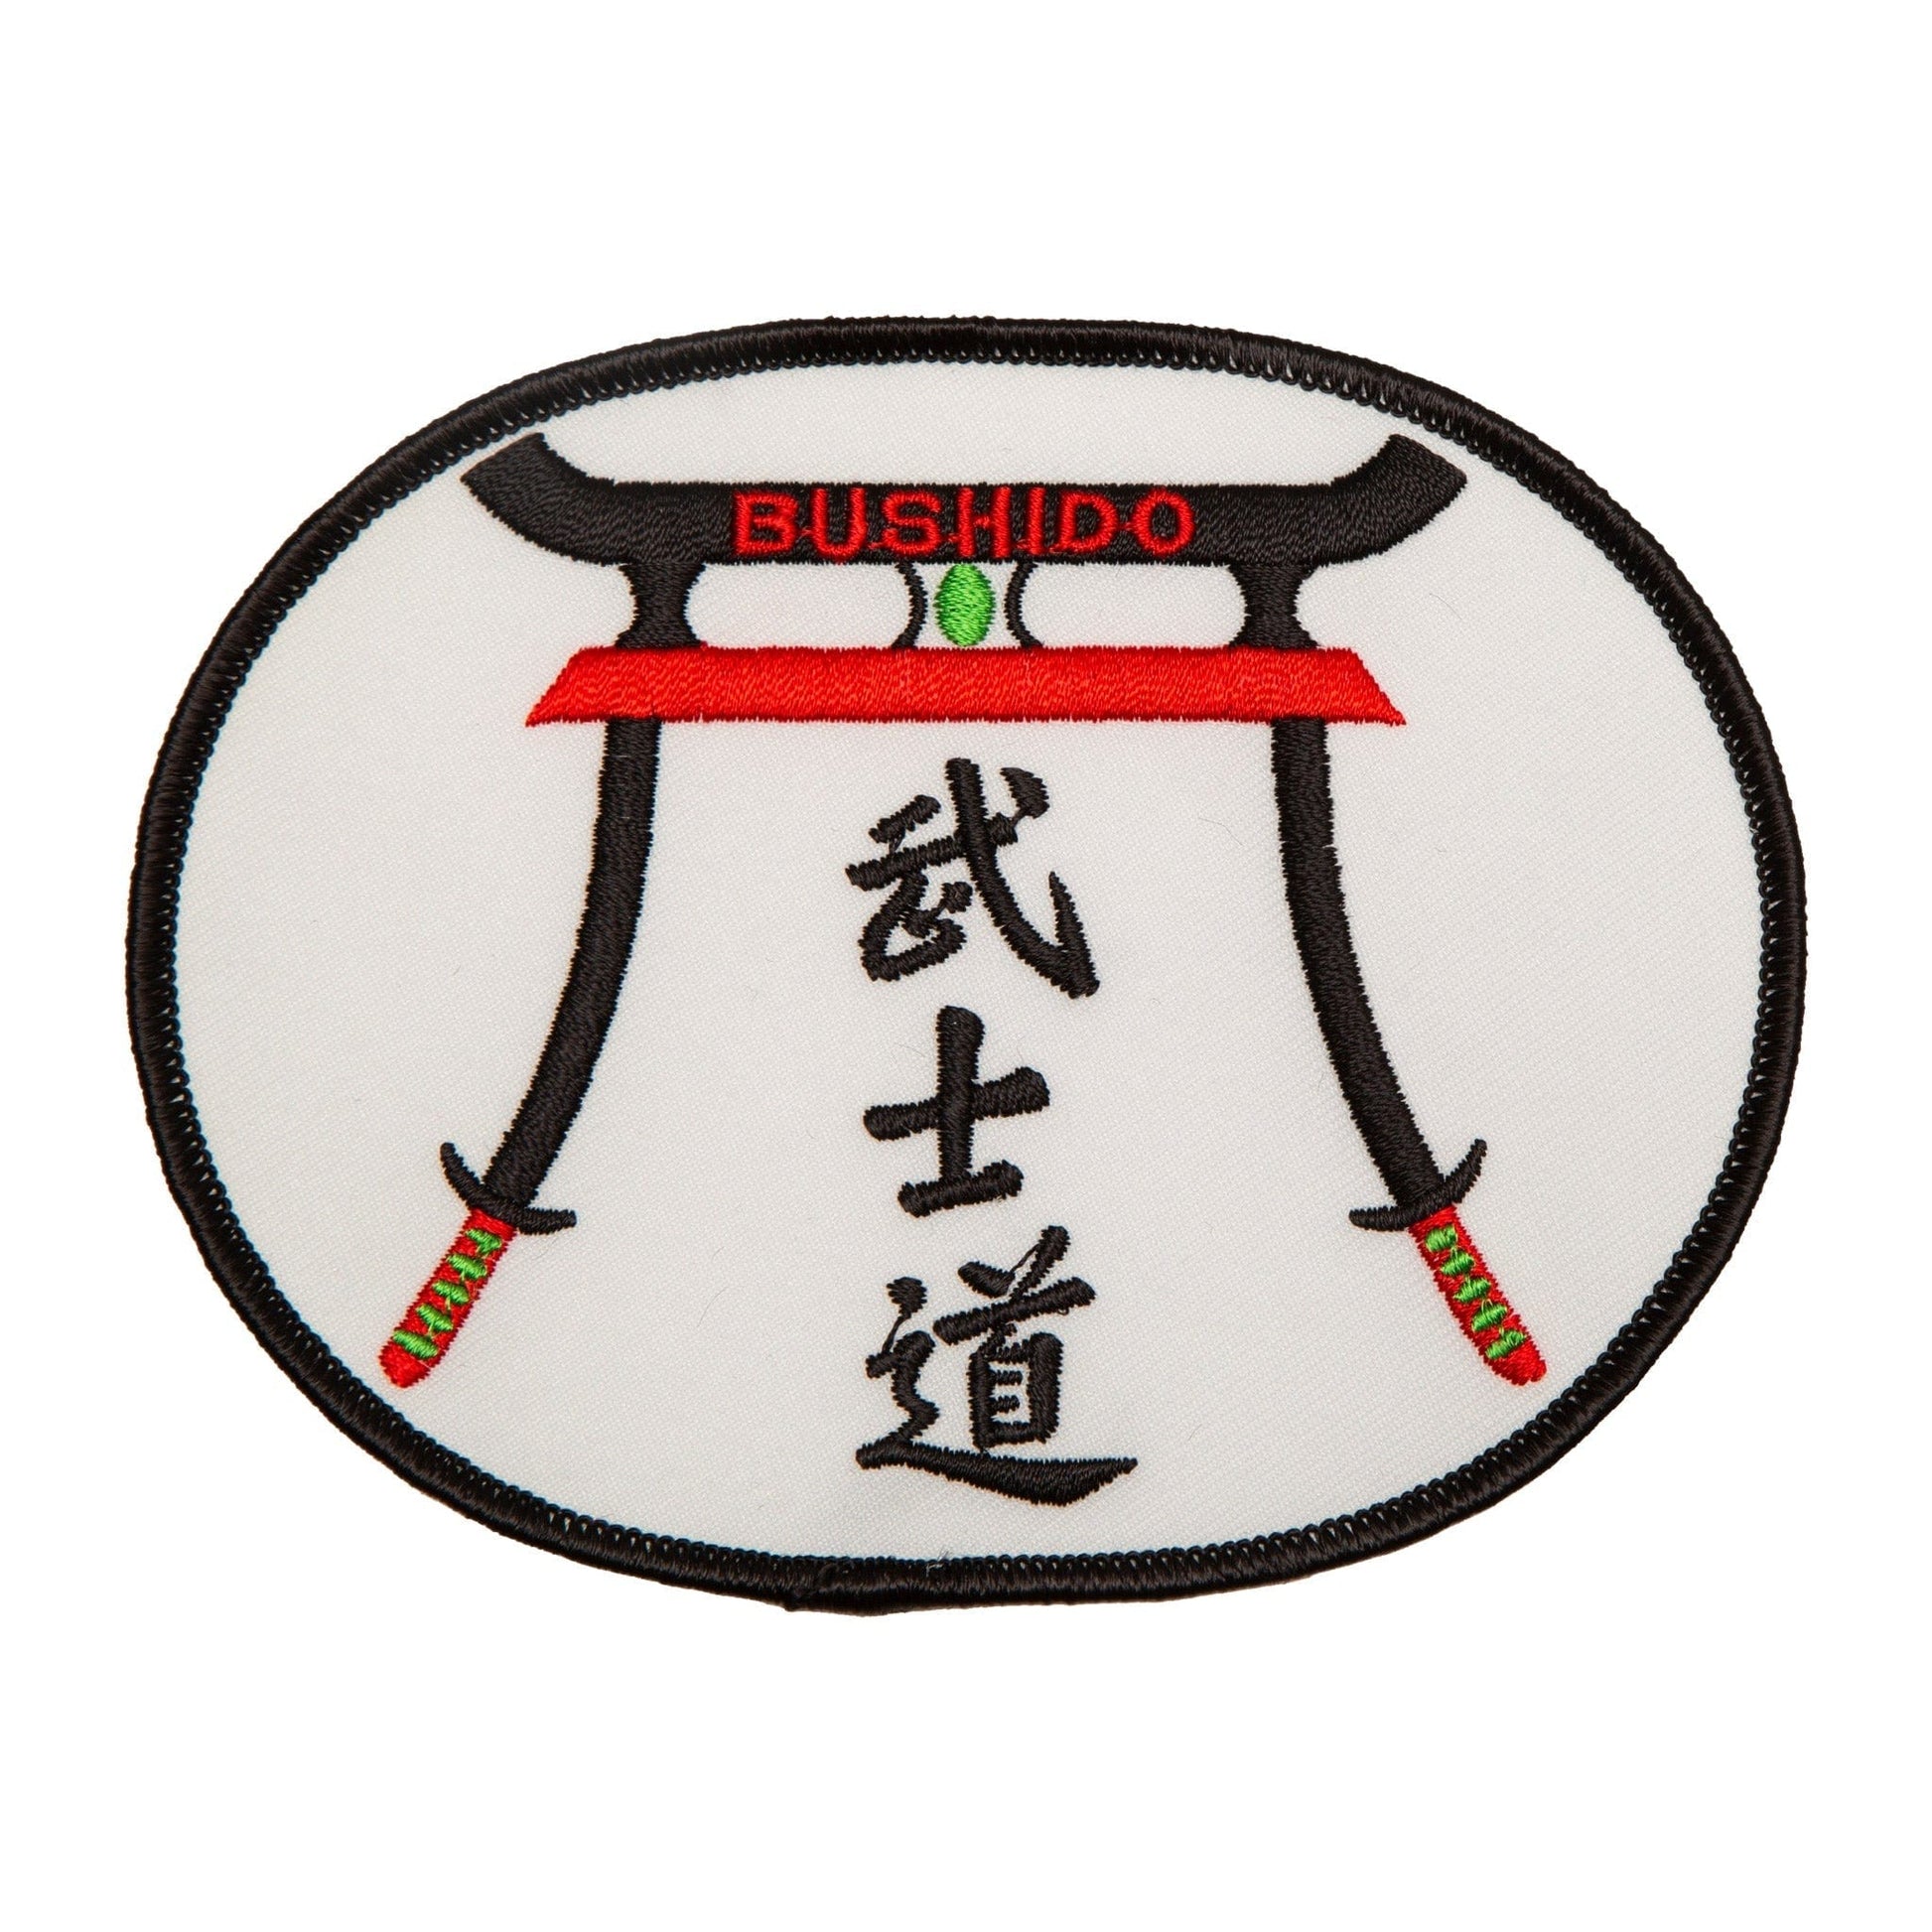 Bushido Patch Martial Arts Uniform Patch